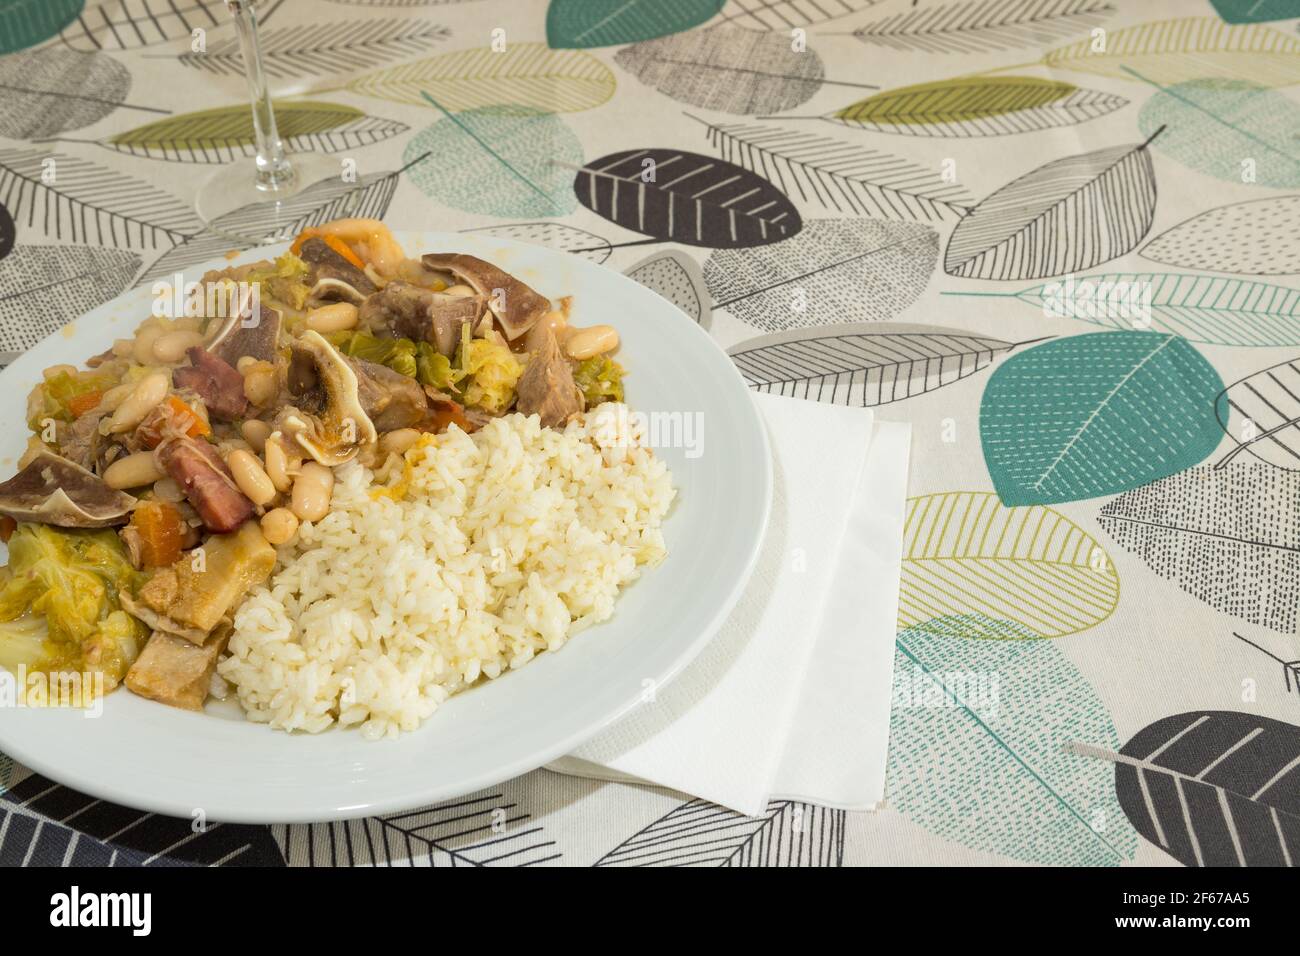 « Feijoada » maison prêt à manger. Il s'agit d'un plat portugais typique composé de haricots blancs bouillis, de légumes, de viande de bœuf et de porc, servi avec du riz. Banque D'Images